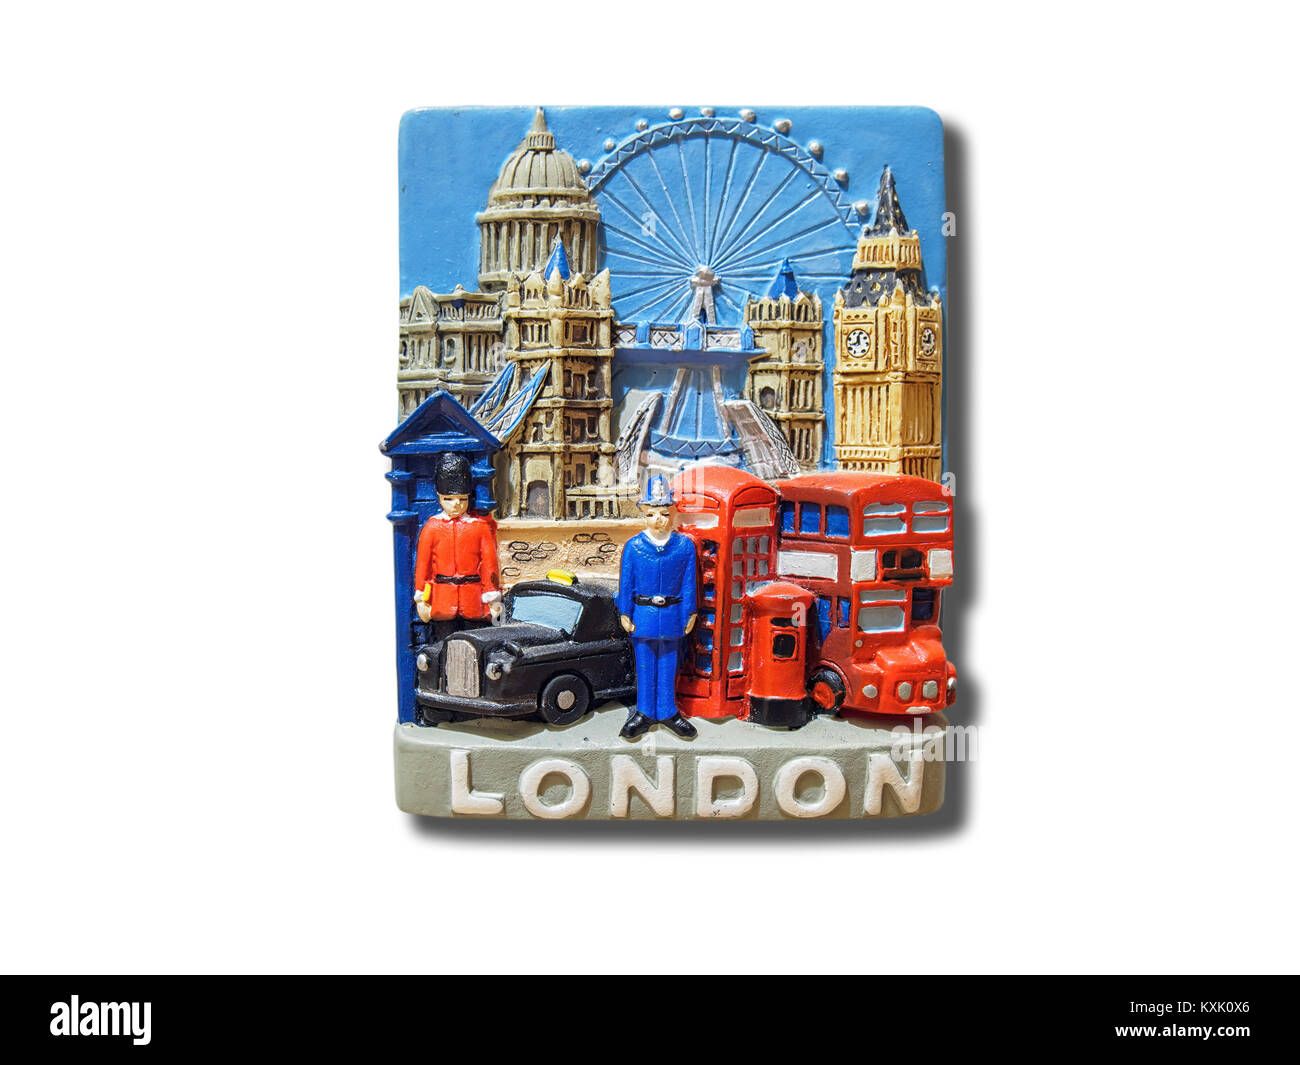 Londra (Inghilterra, Regno Unito) souvenir magnete da frigorifero isolati su sfondo bianco Foto Stock